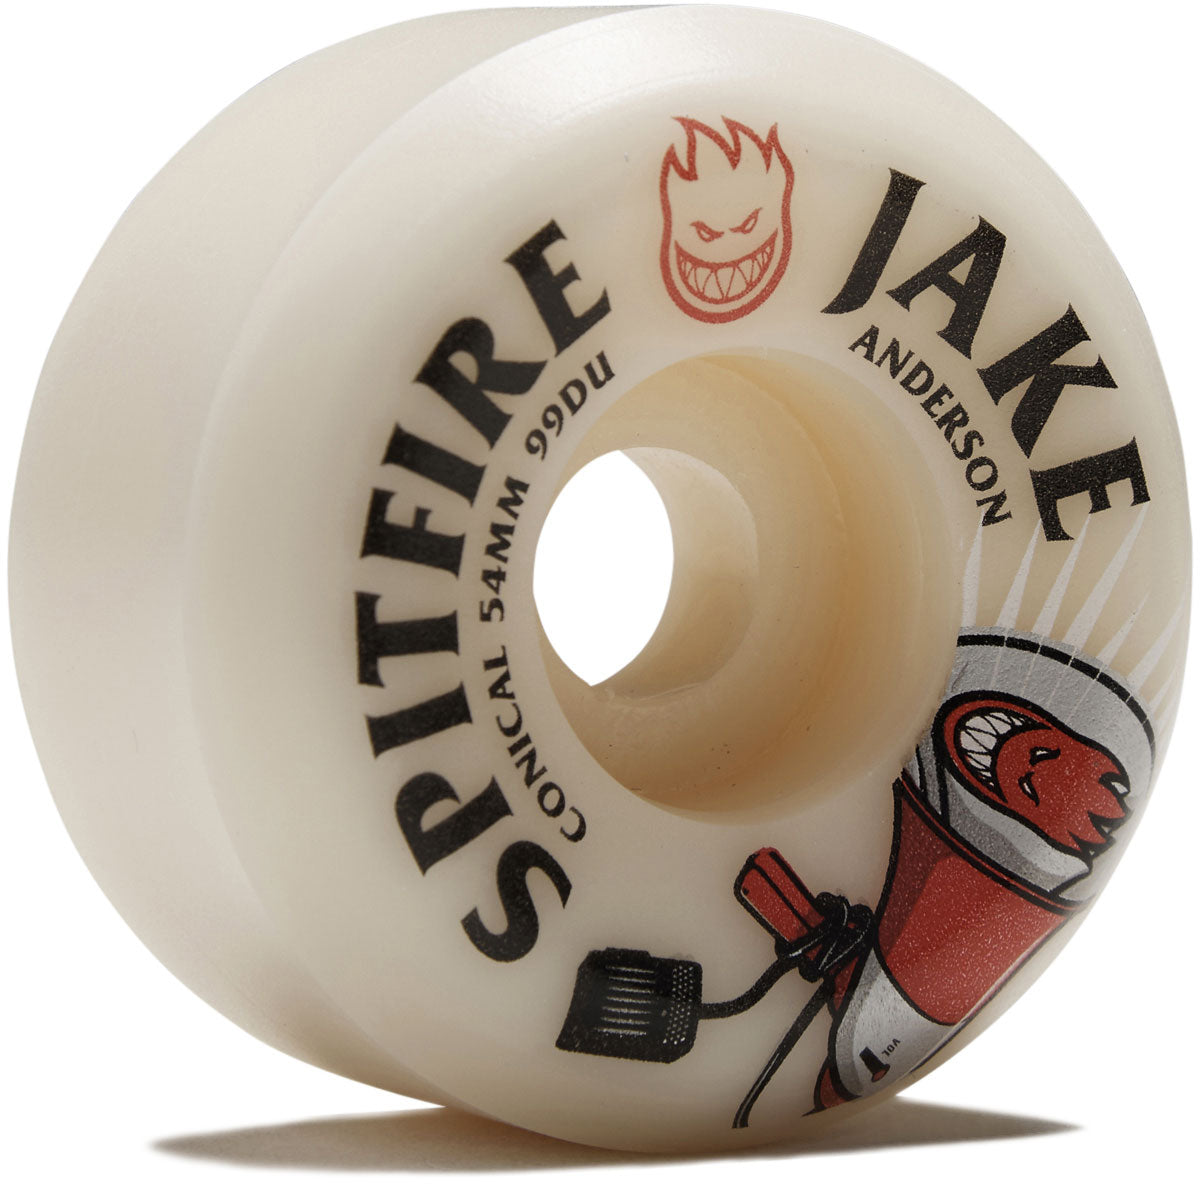 Spitfire F4 99d Jake Anderson Burn Squad Conical Skateboard Wheels - 54mm image 1